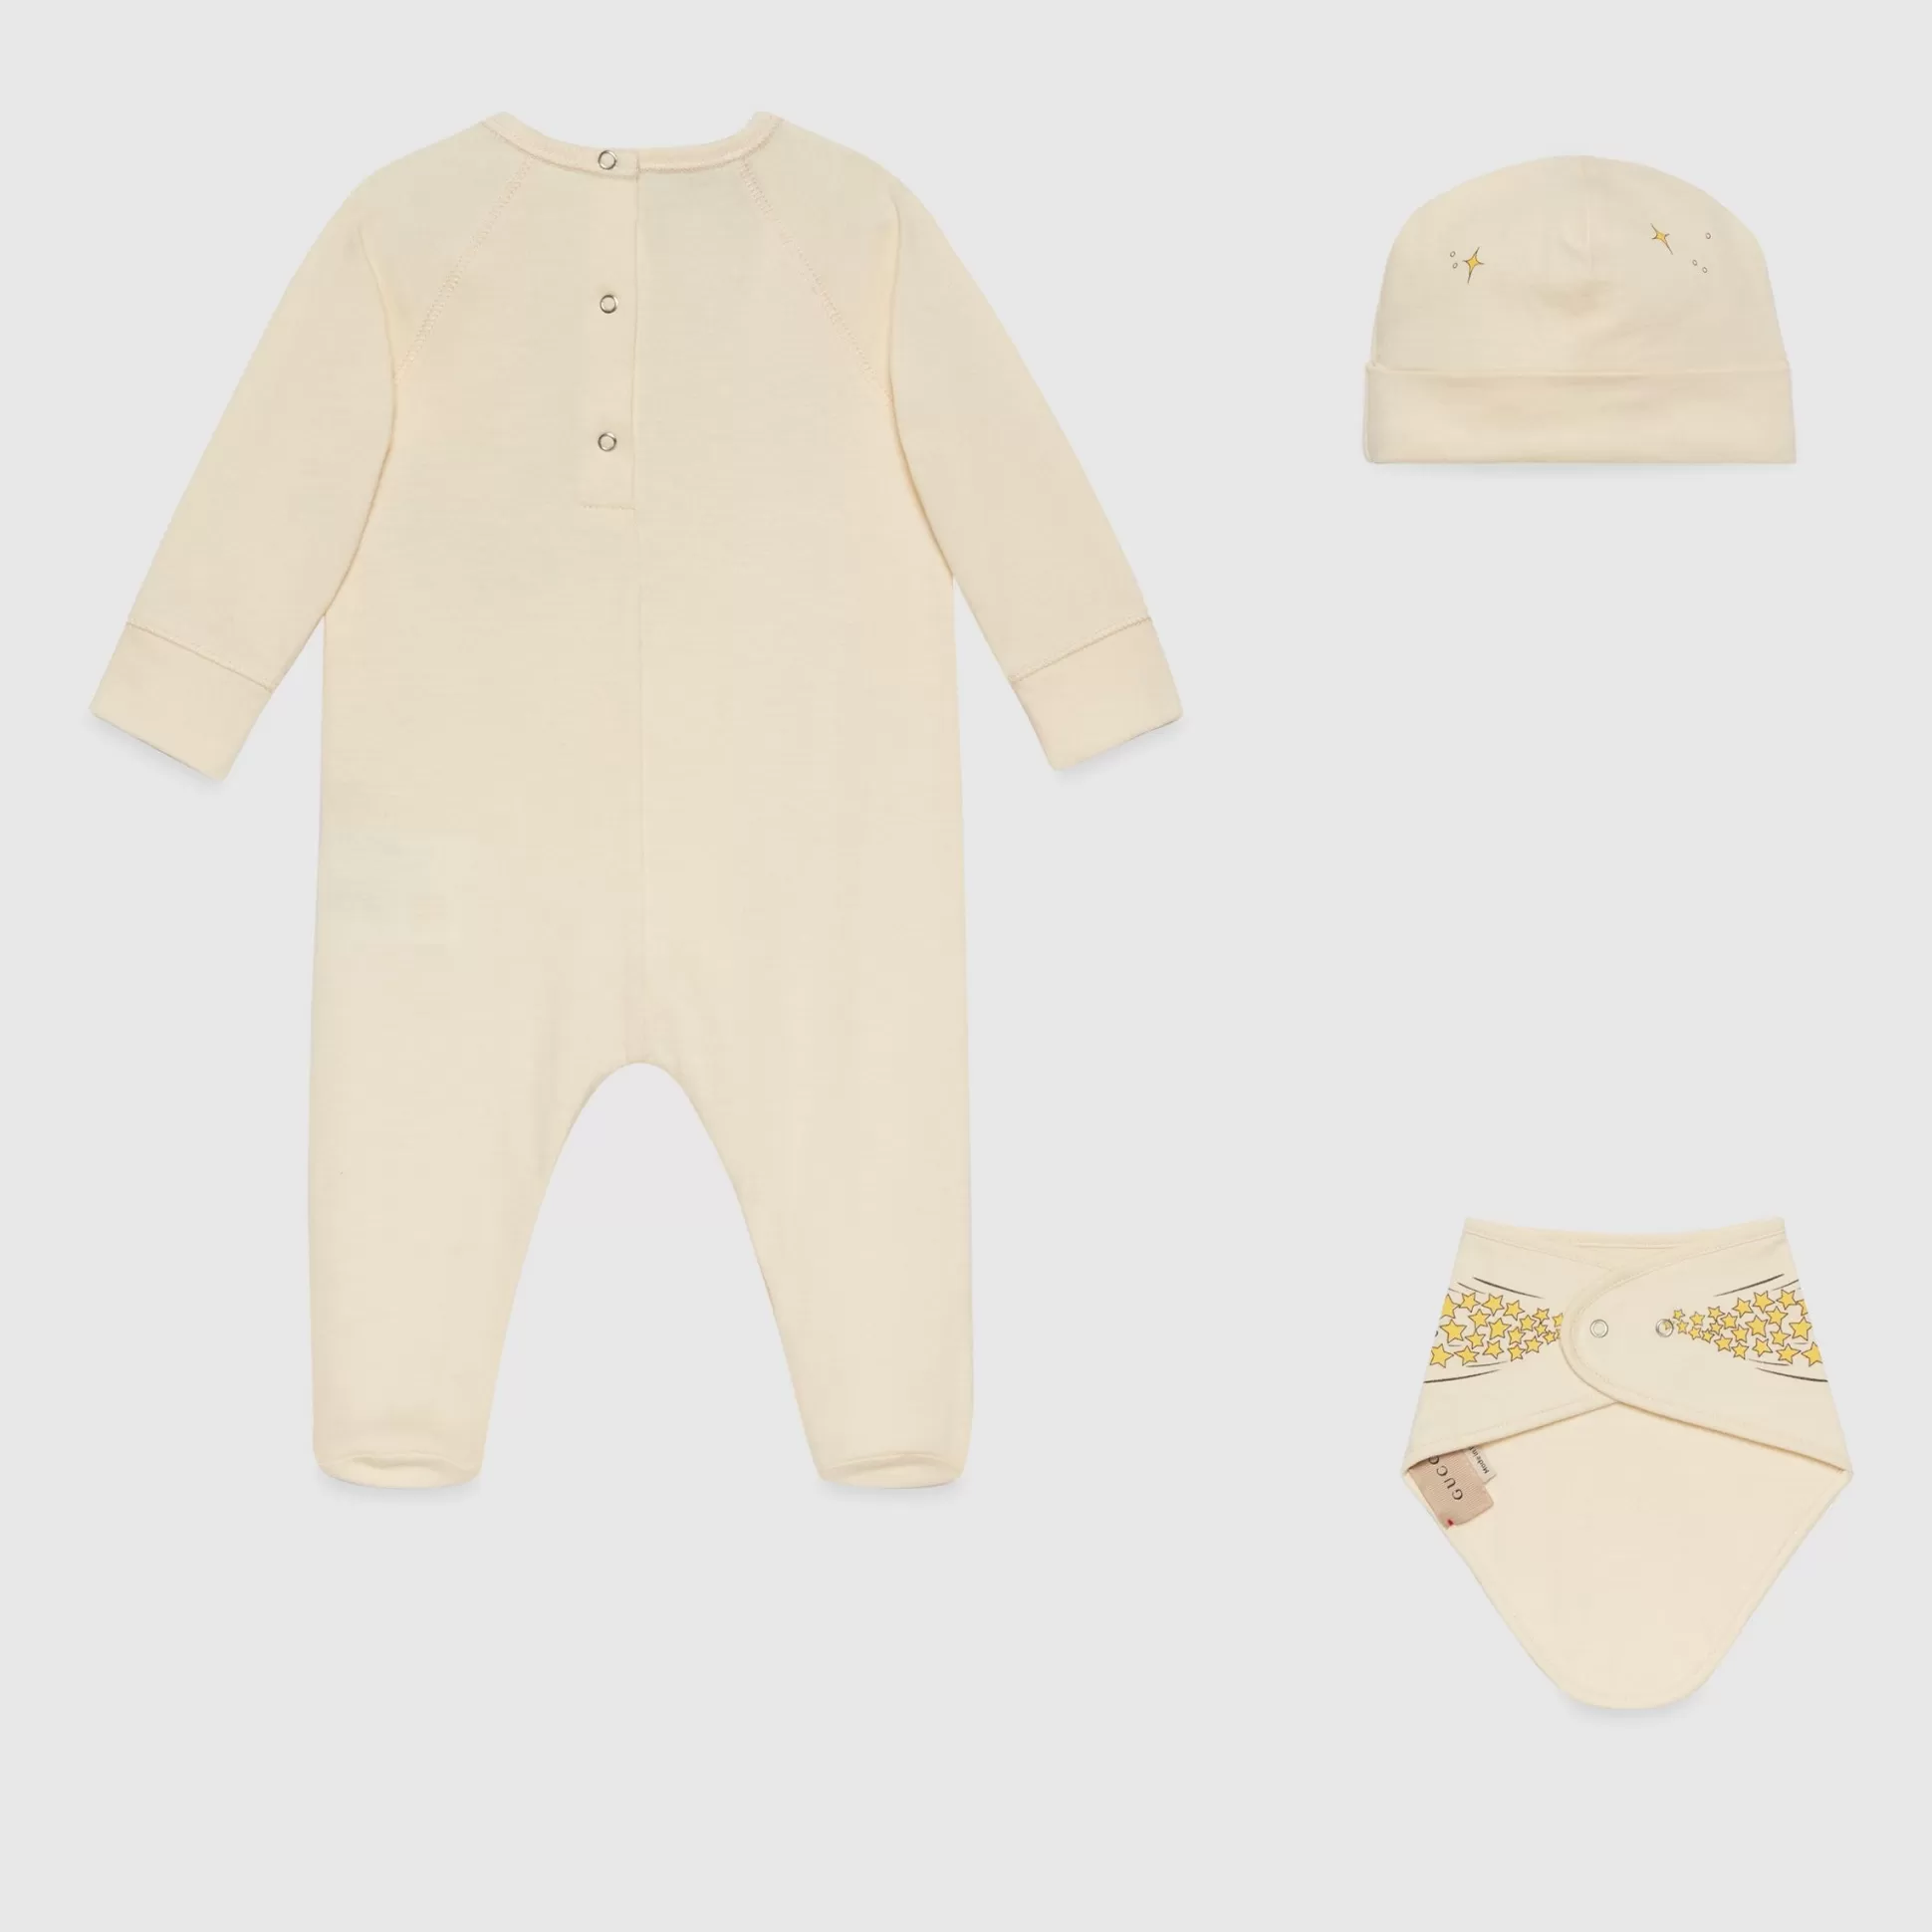 GUCCI Baby Cotton Jersey Gift Set-Children Boys (0-36 Months)